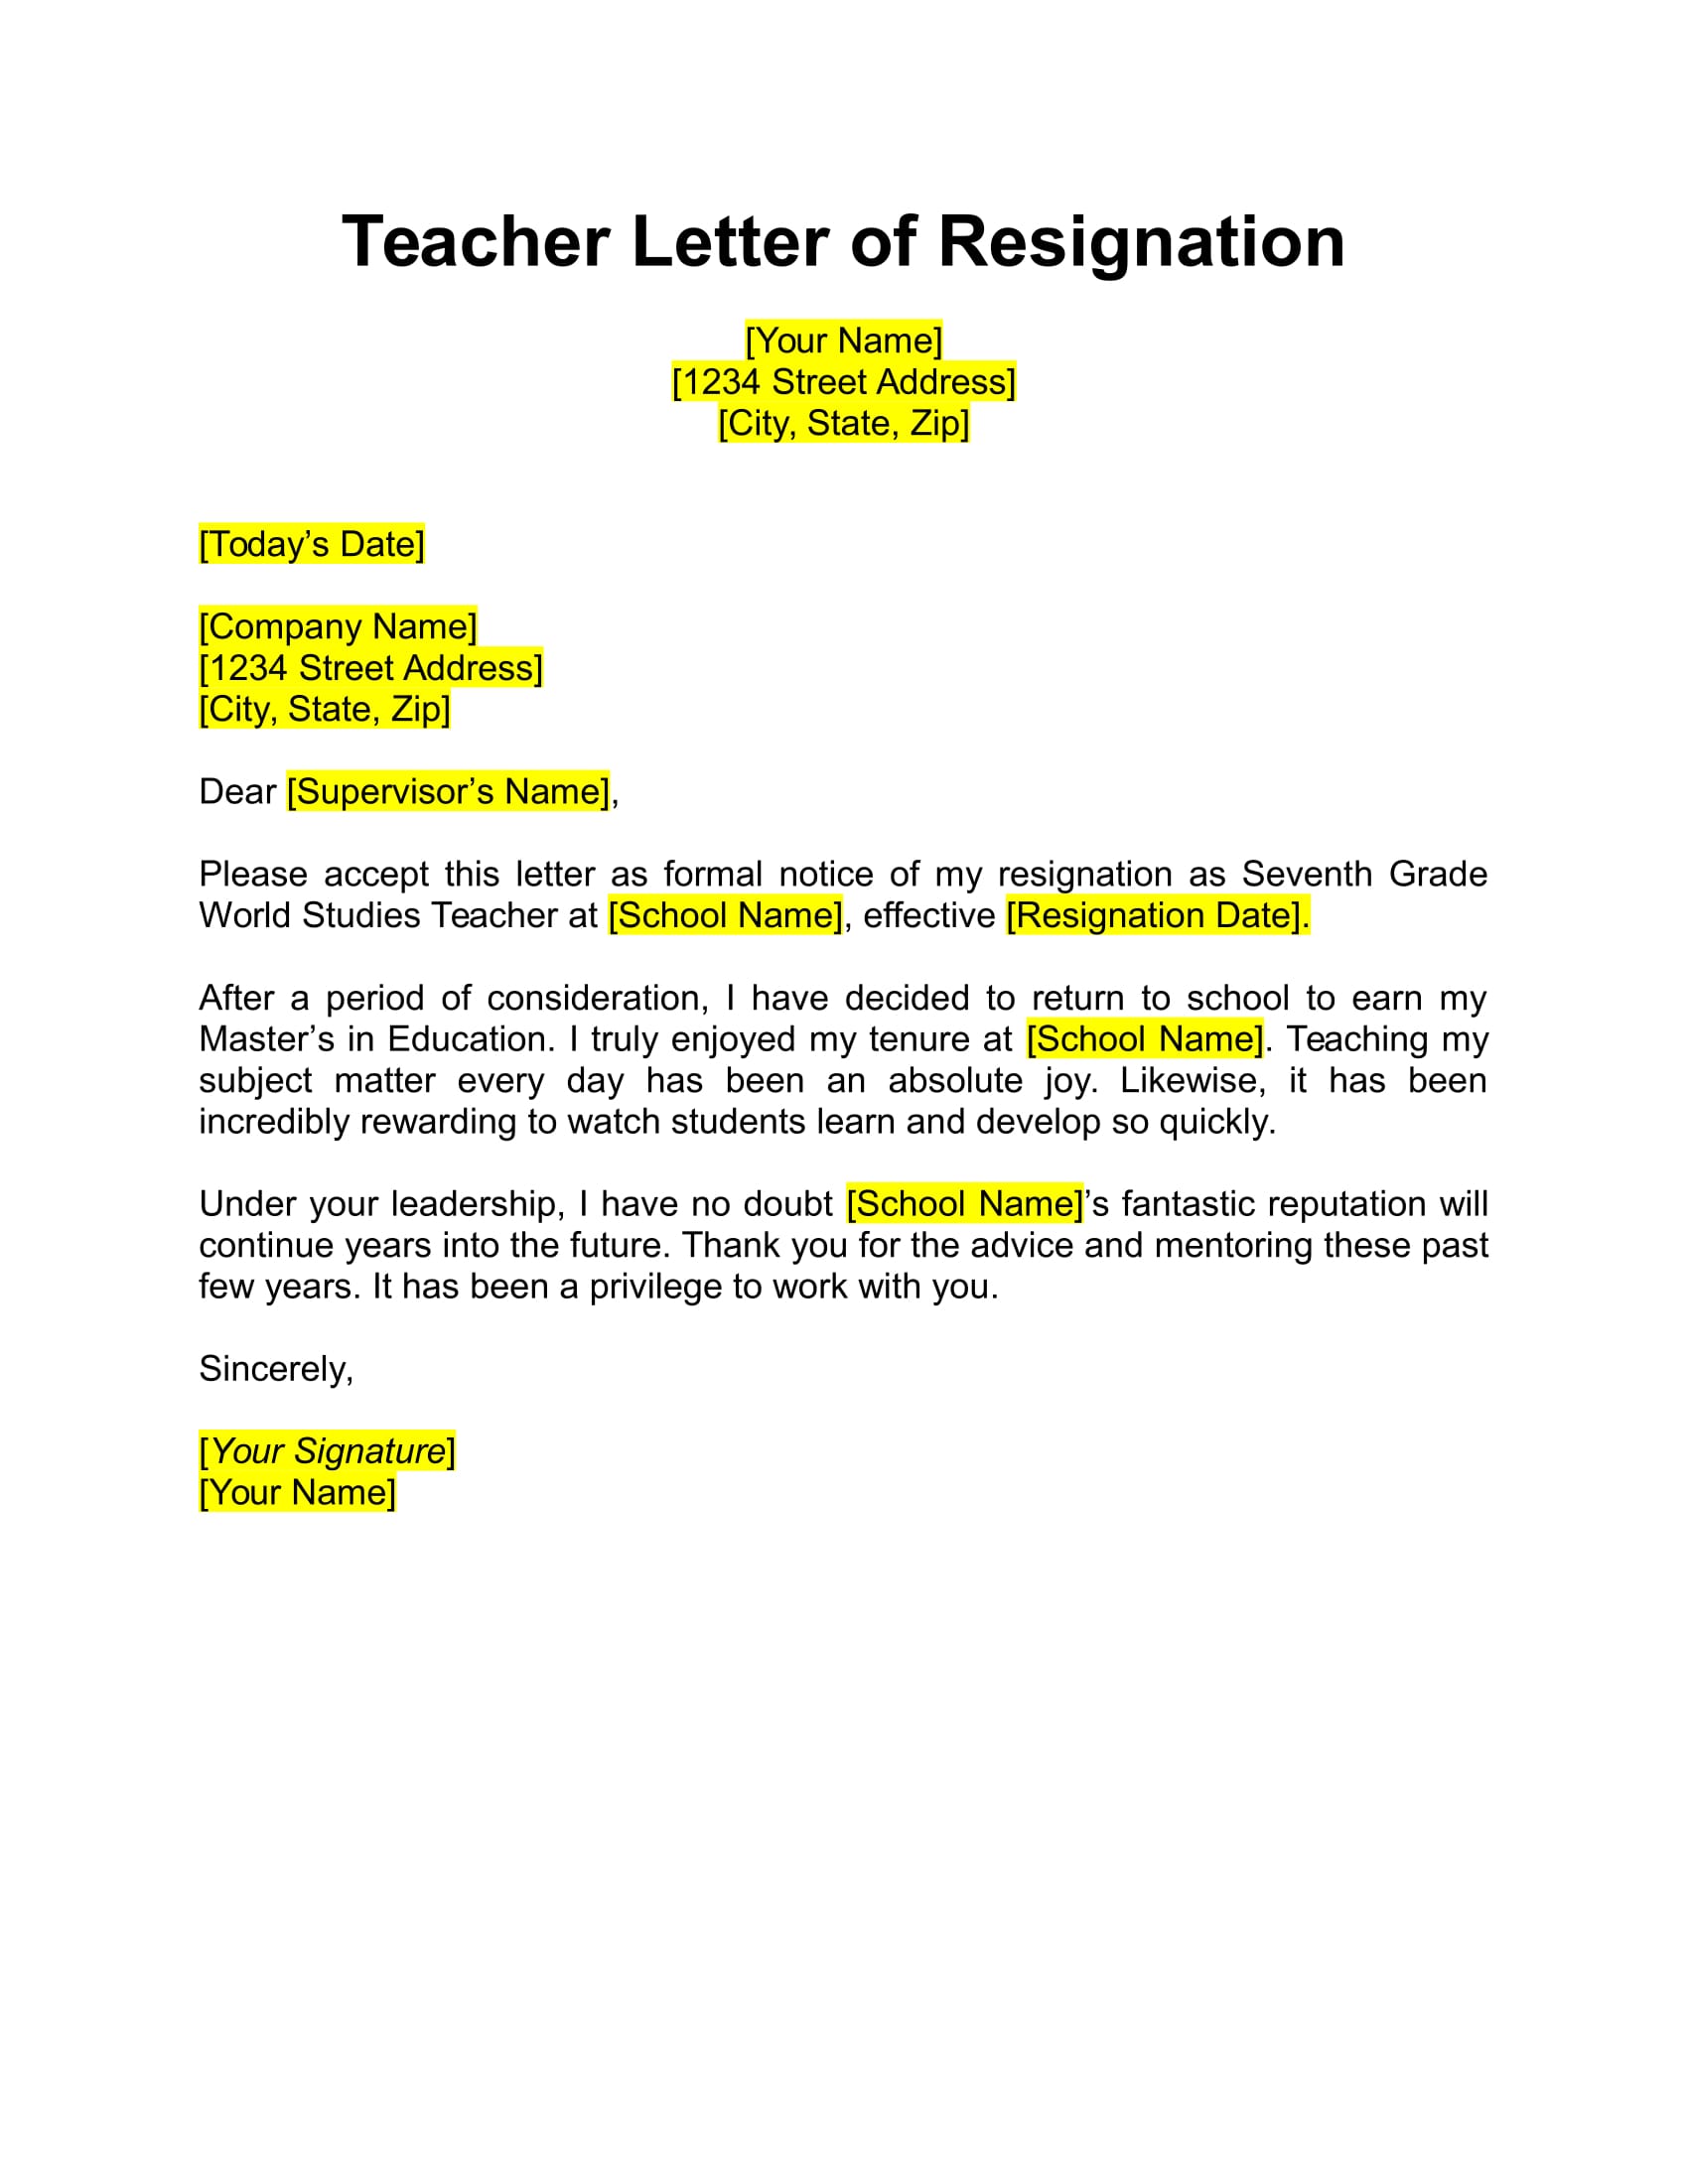 Teacher Letter Of Resignation Sample